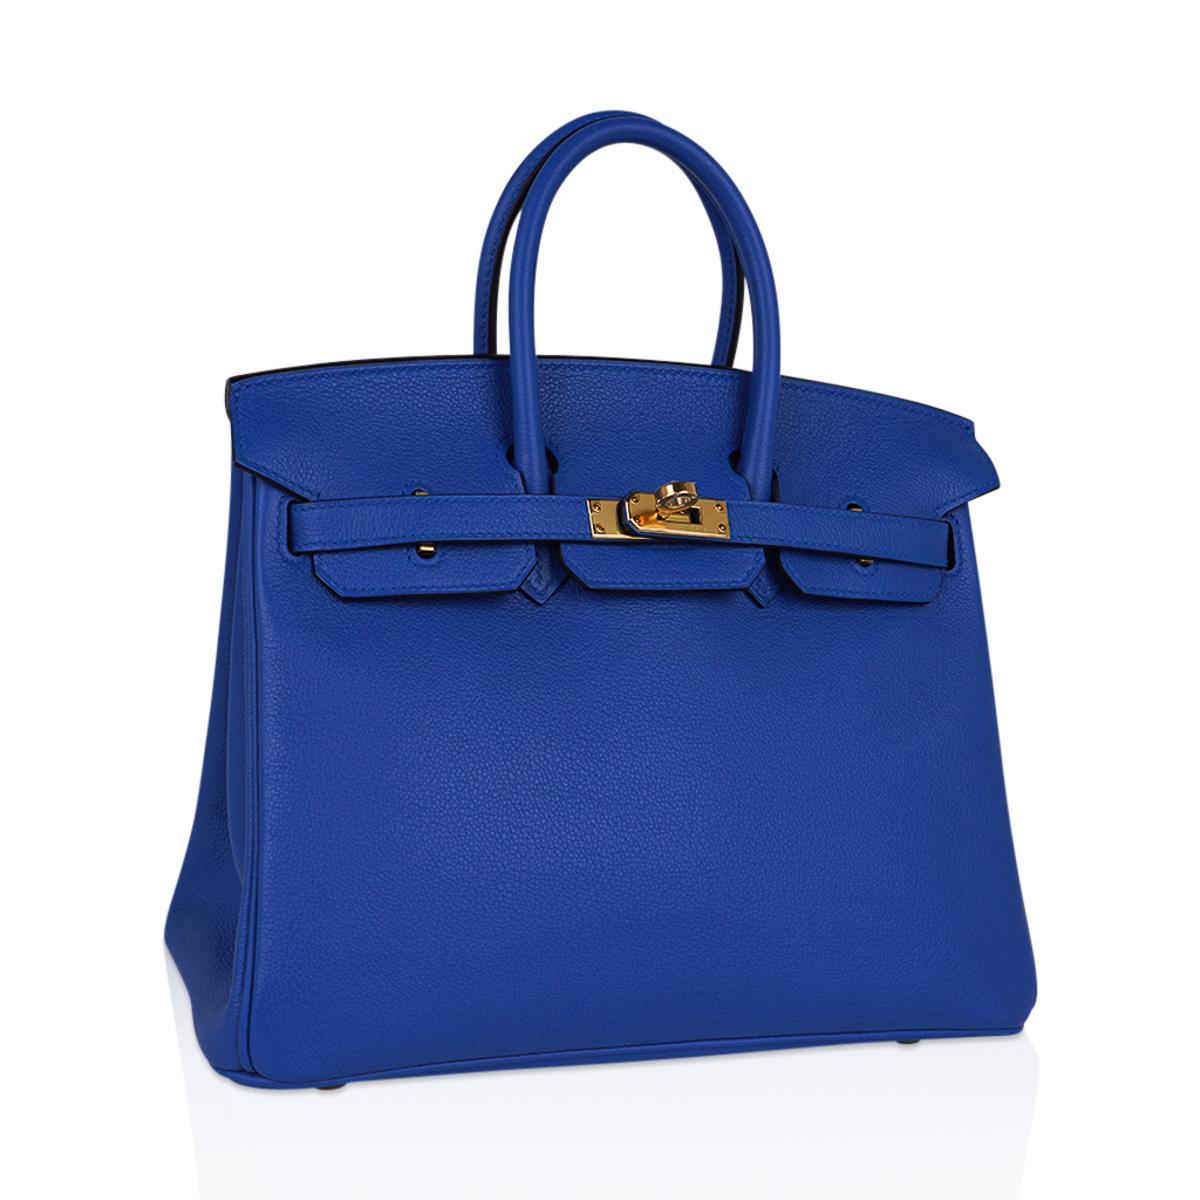 Mightychic propose un sac Hermes Birkin 25 dans un superbe Zellige bleu. 
Le Bleu Zellige, richement saturé, a une belle profondeur de couleur dans le cuir Novillo. 
Le tout agrémenté d'une quincaillerie dorée.
Livré avec serrure, clés, clochette,